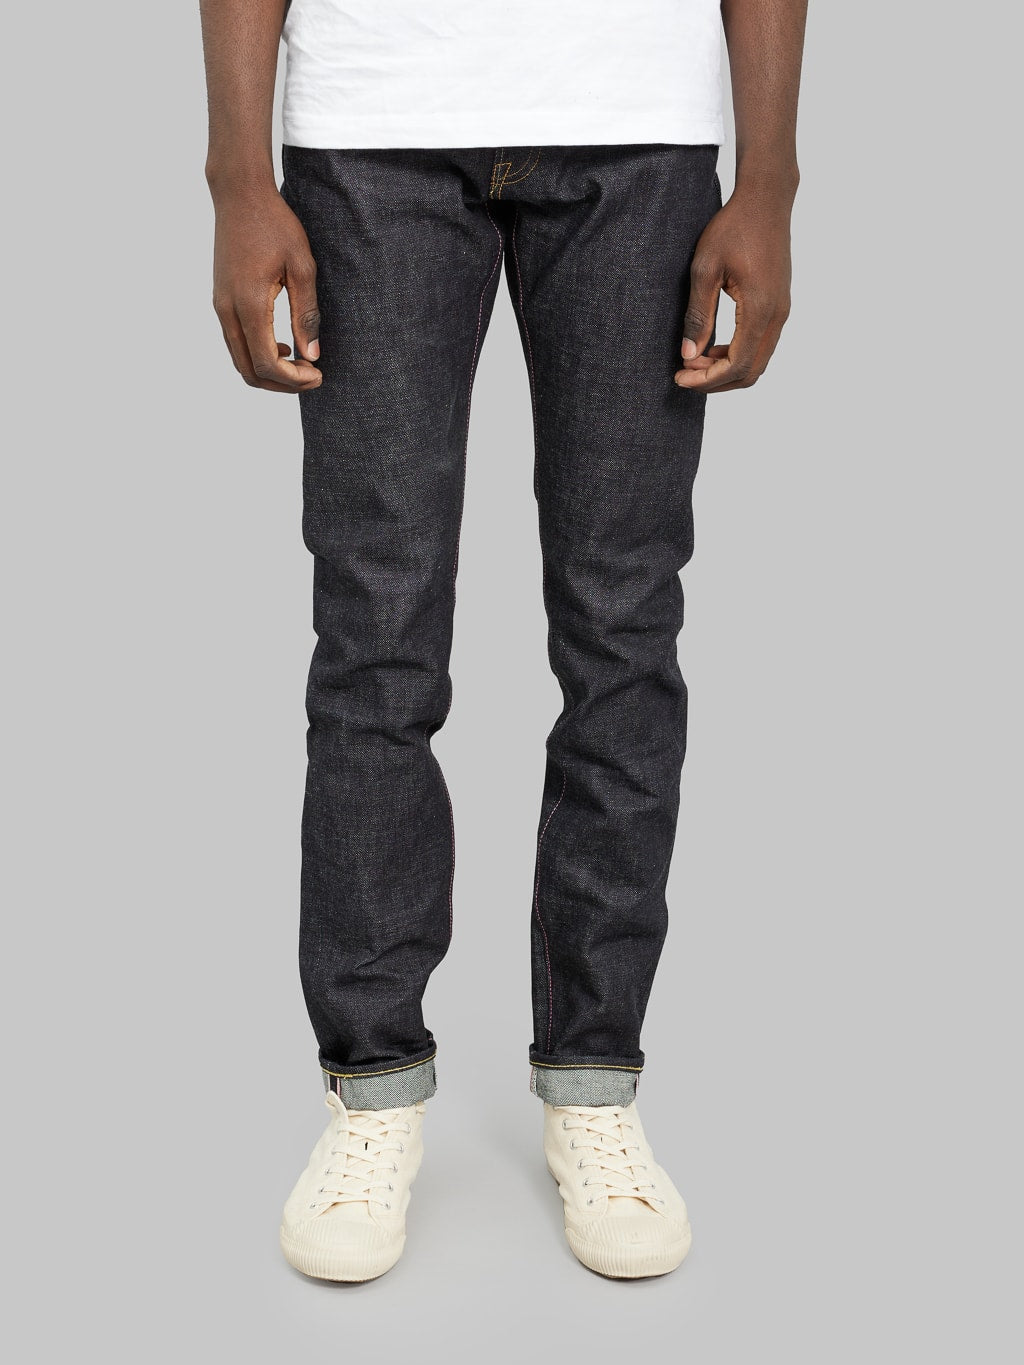 momotaro jeans 0405 v selvedge denim high tapered front fit